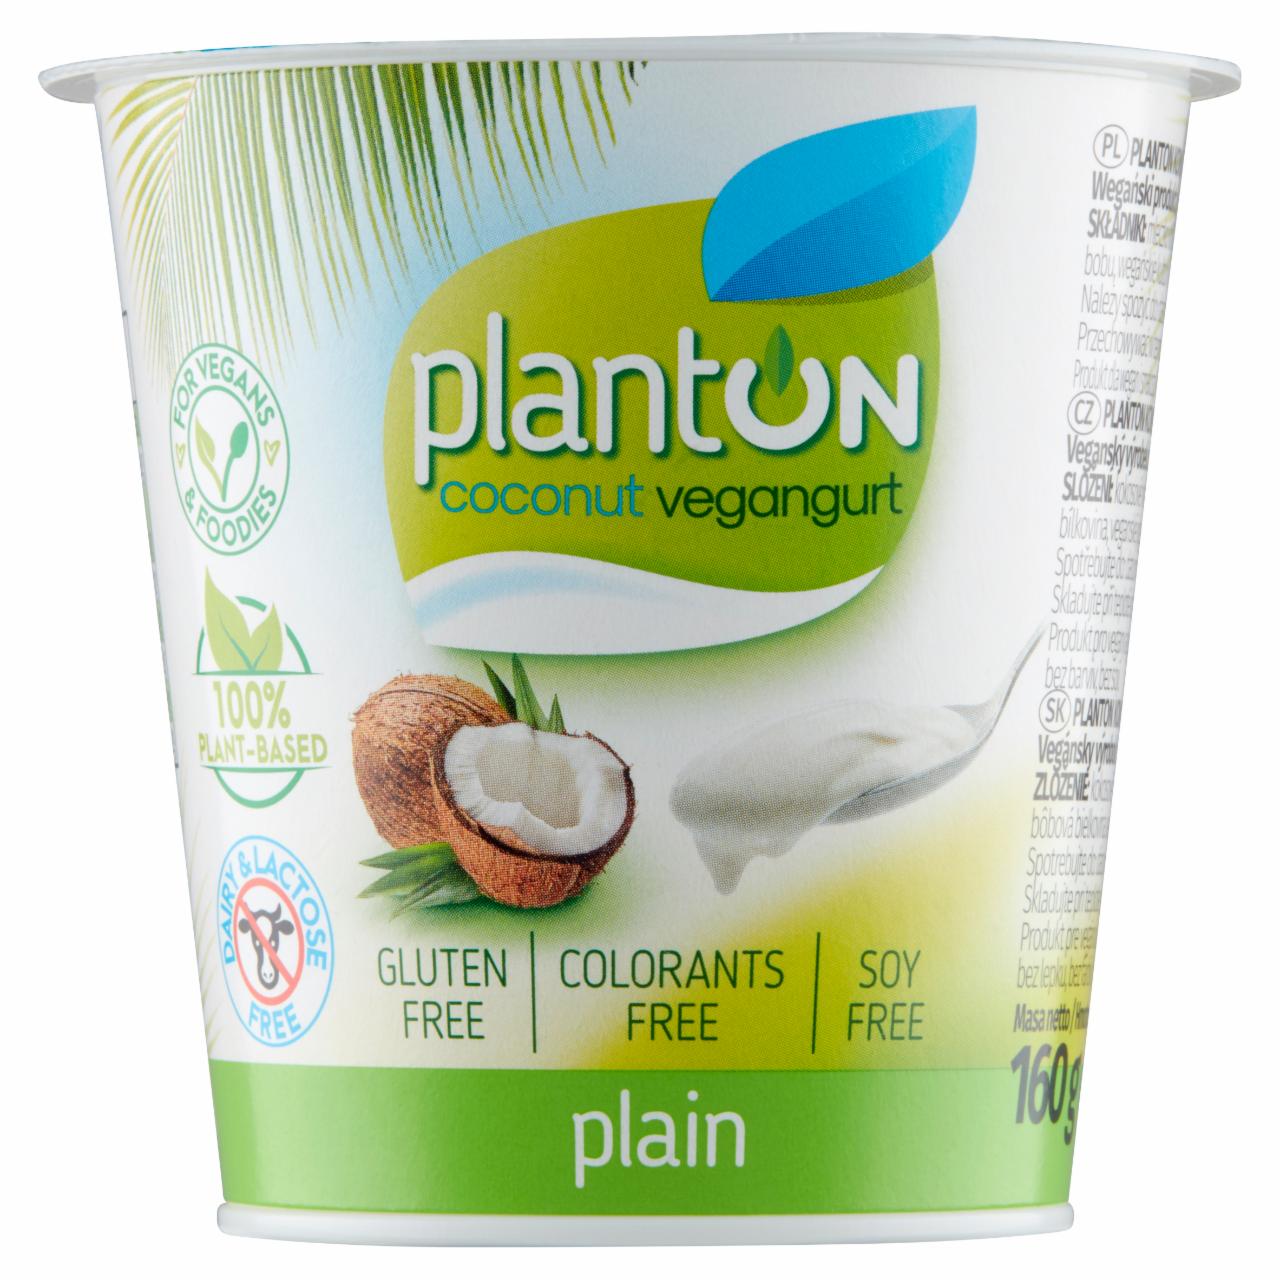 Zdjęcia - Planton Kokosowy vegangurt plain 160 g